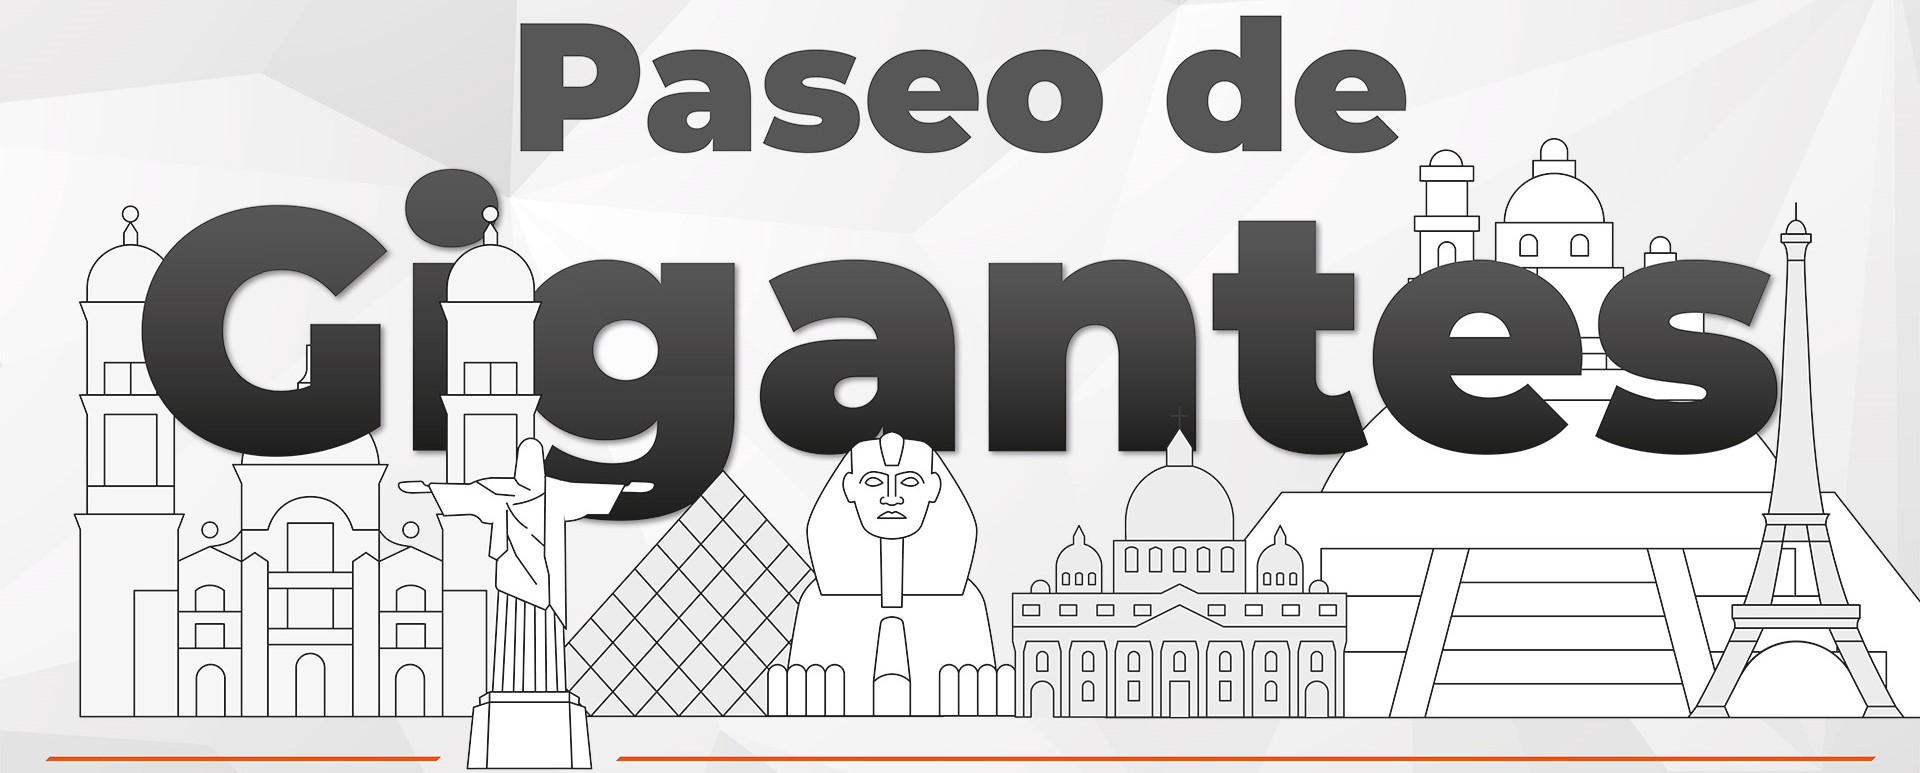 Paseo de Gigantes, La Constancia Mexicana Puebla